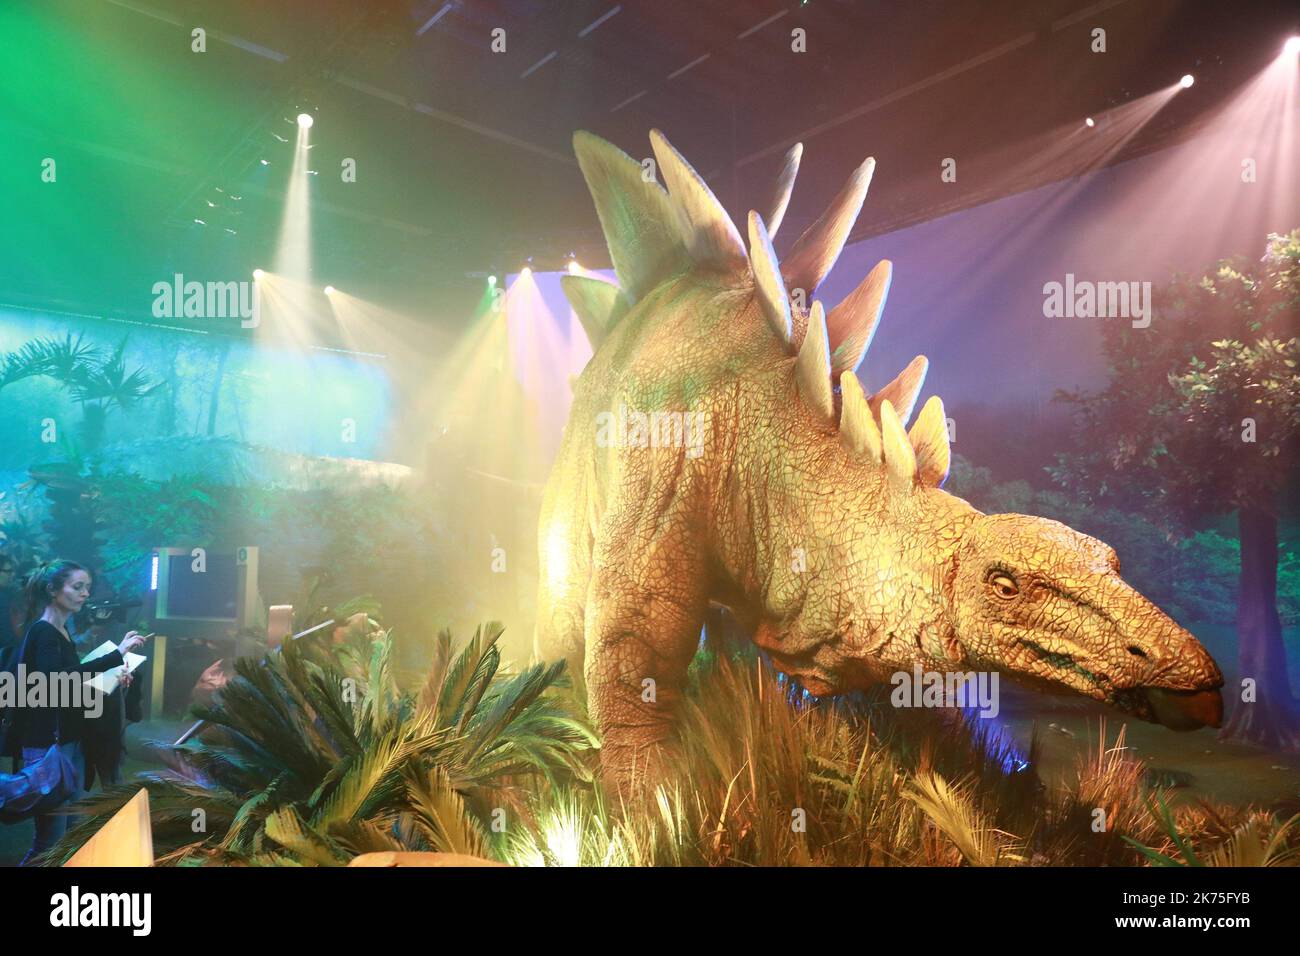 Die Jurassic World-Ausstellung kommt vom 14. April 2018 bis zum 2. September 2018 nach Saint-Denis, Frankreich. Stockfoto